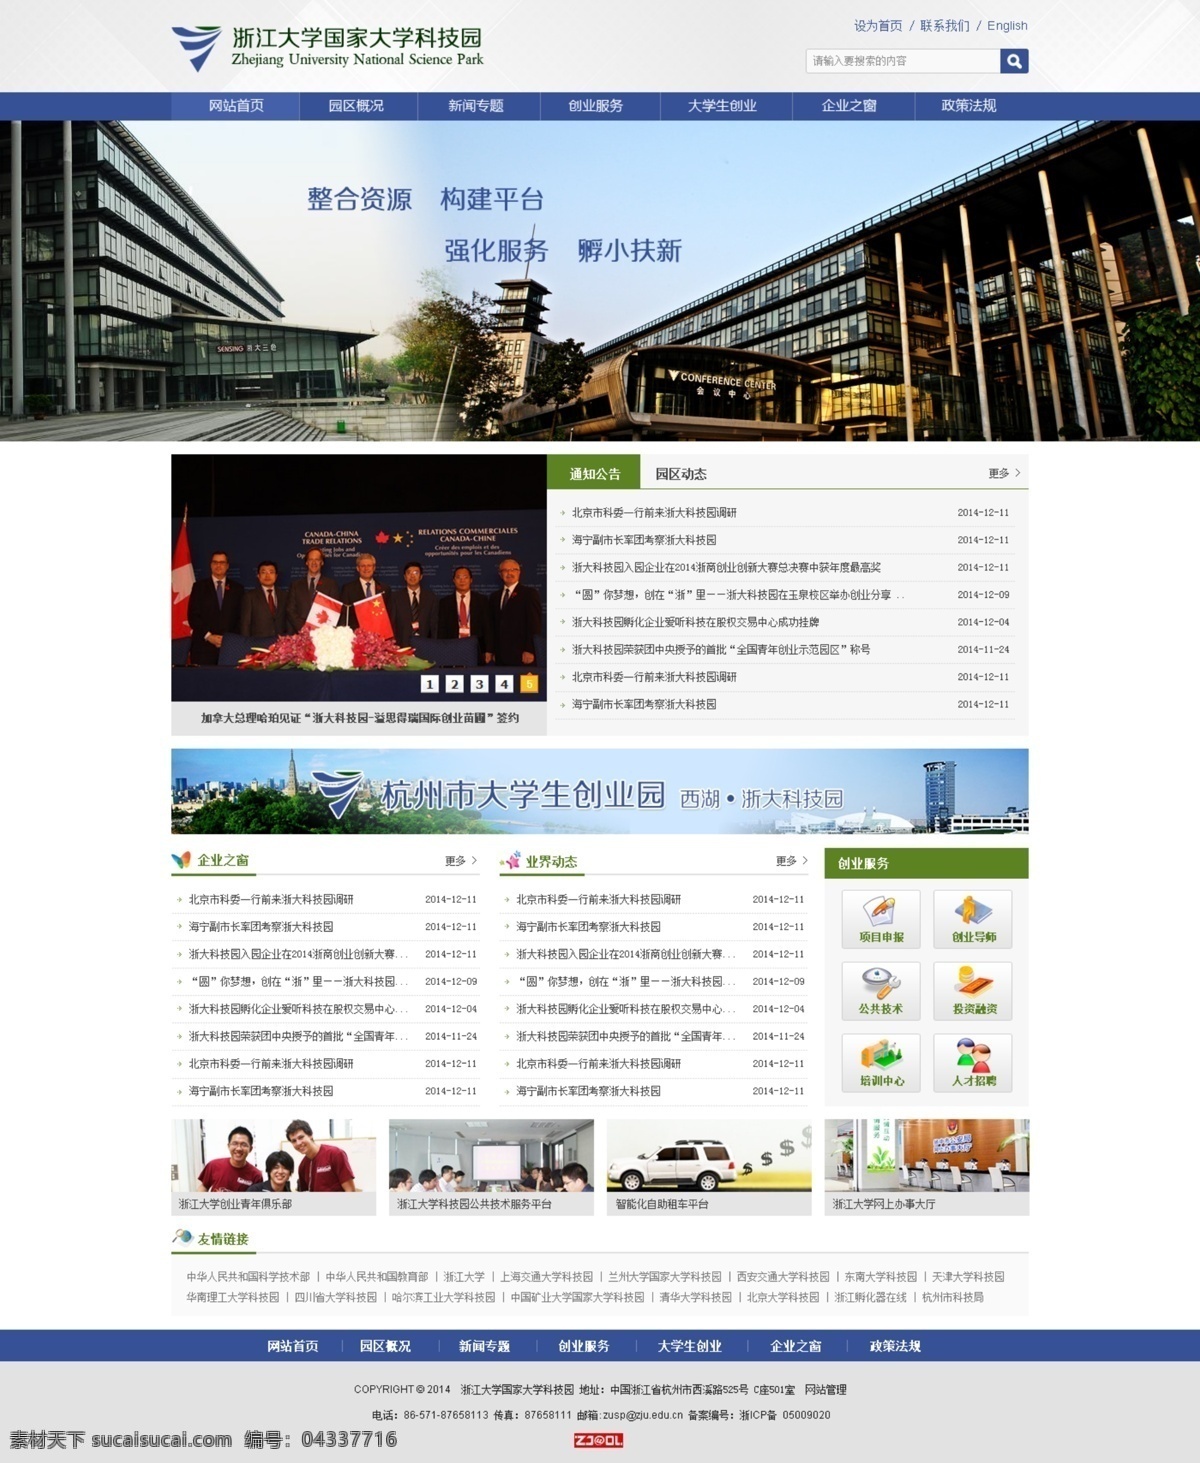 浙江大学 科技园 教育网站 蓝色 绿色 扁平风格 飞机稿 网页设计 web 界面设计 中文模板 白色